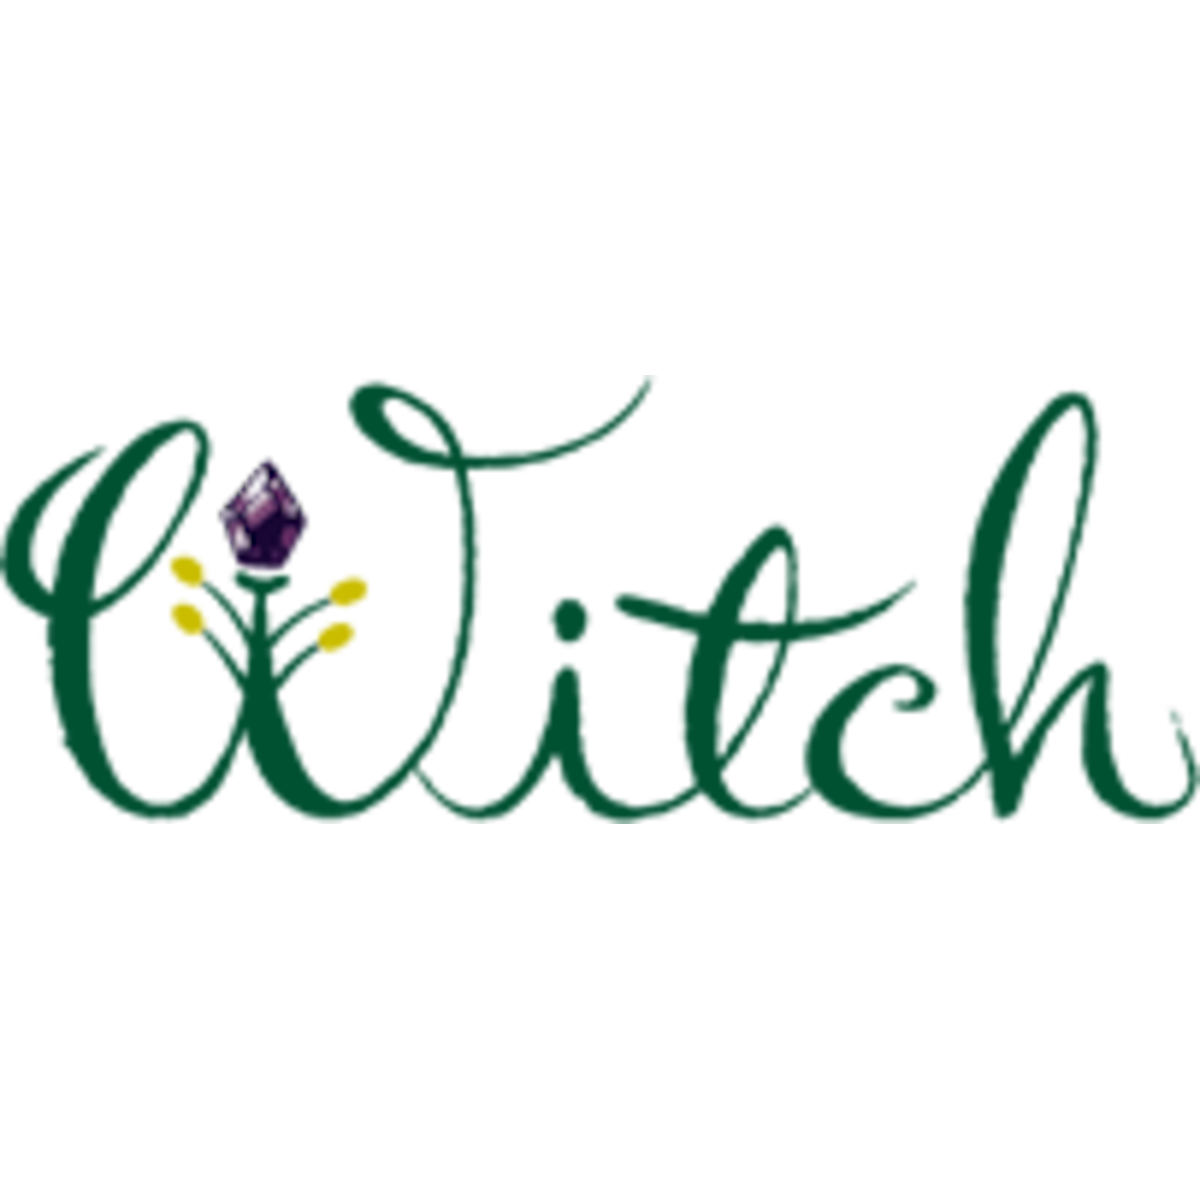 witch